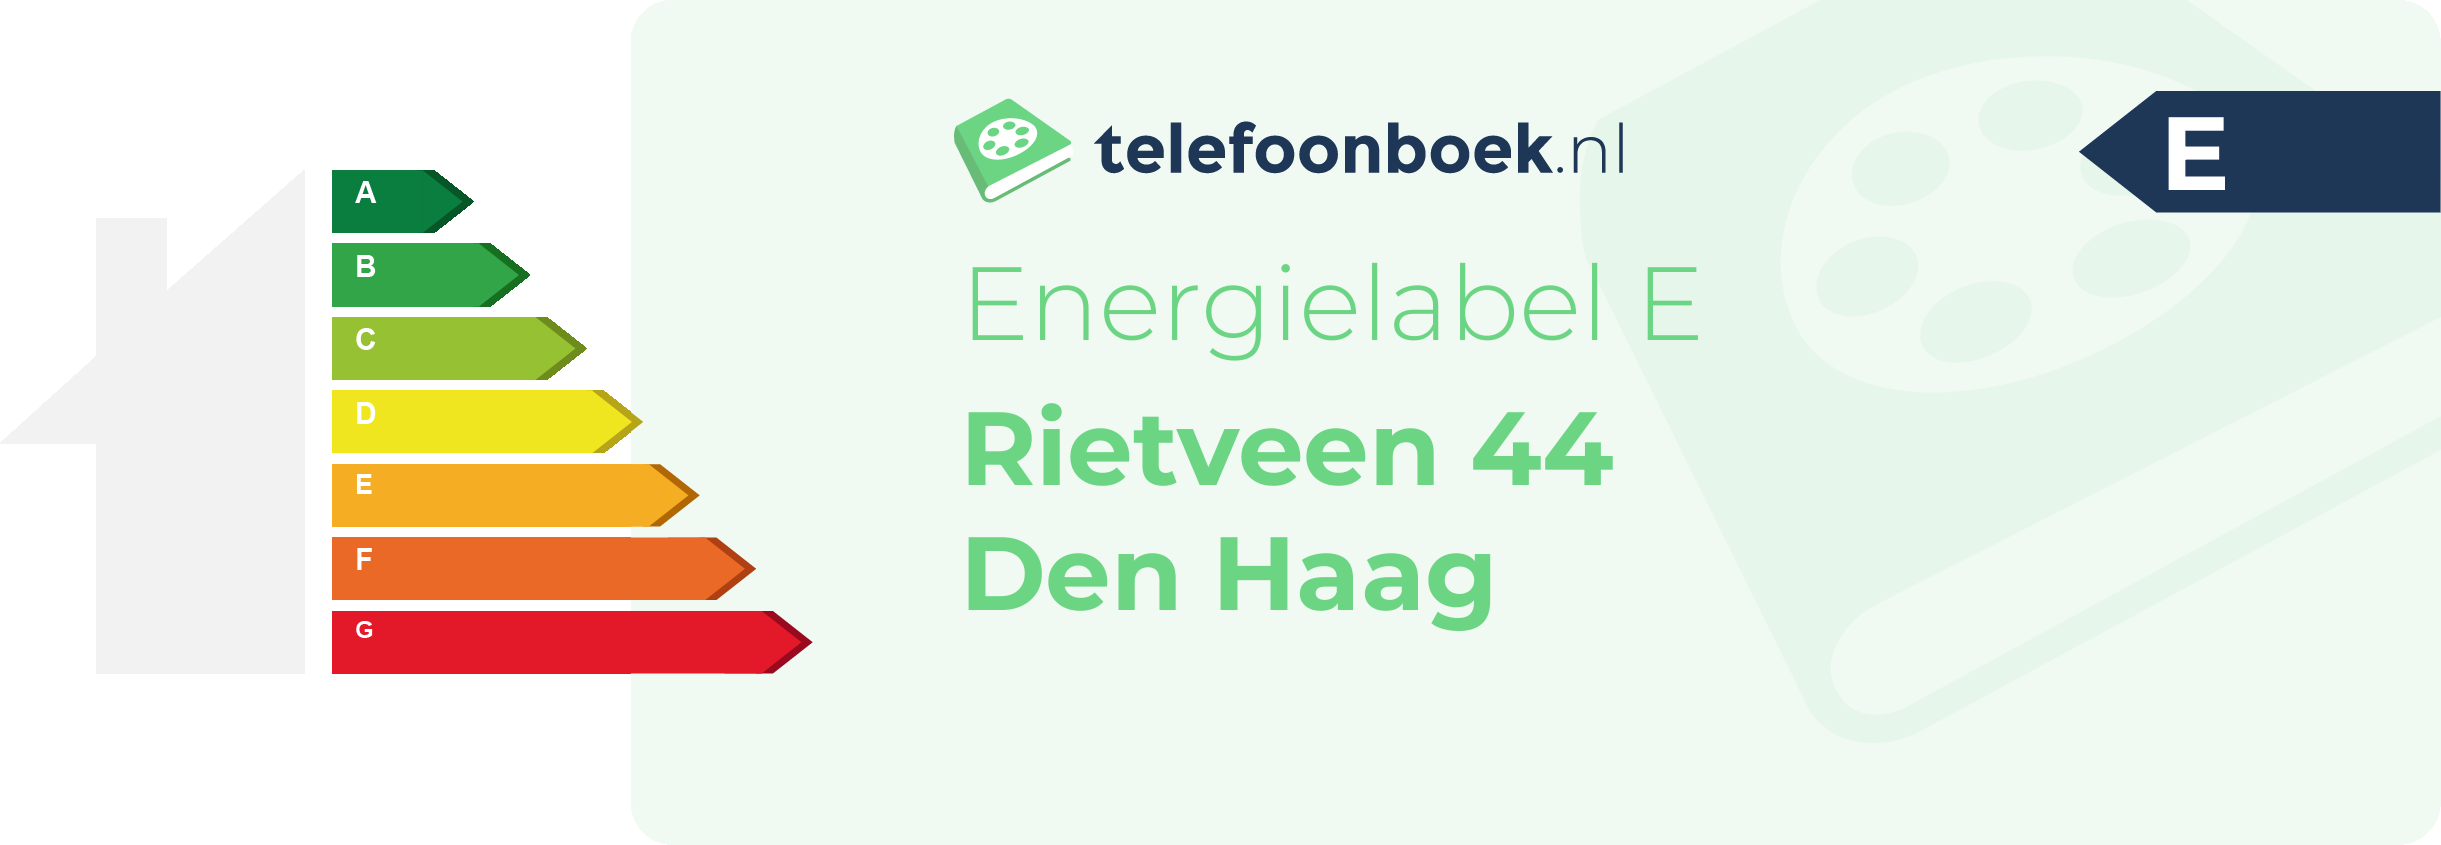 Energielabel Rietveen 44 Den Haag